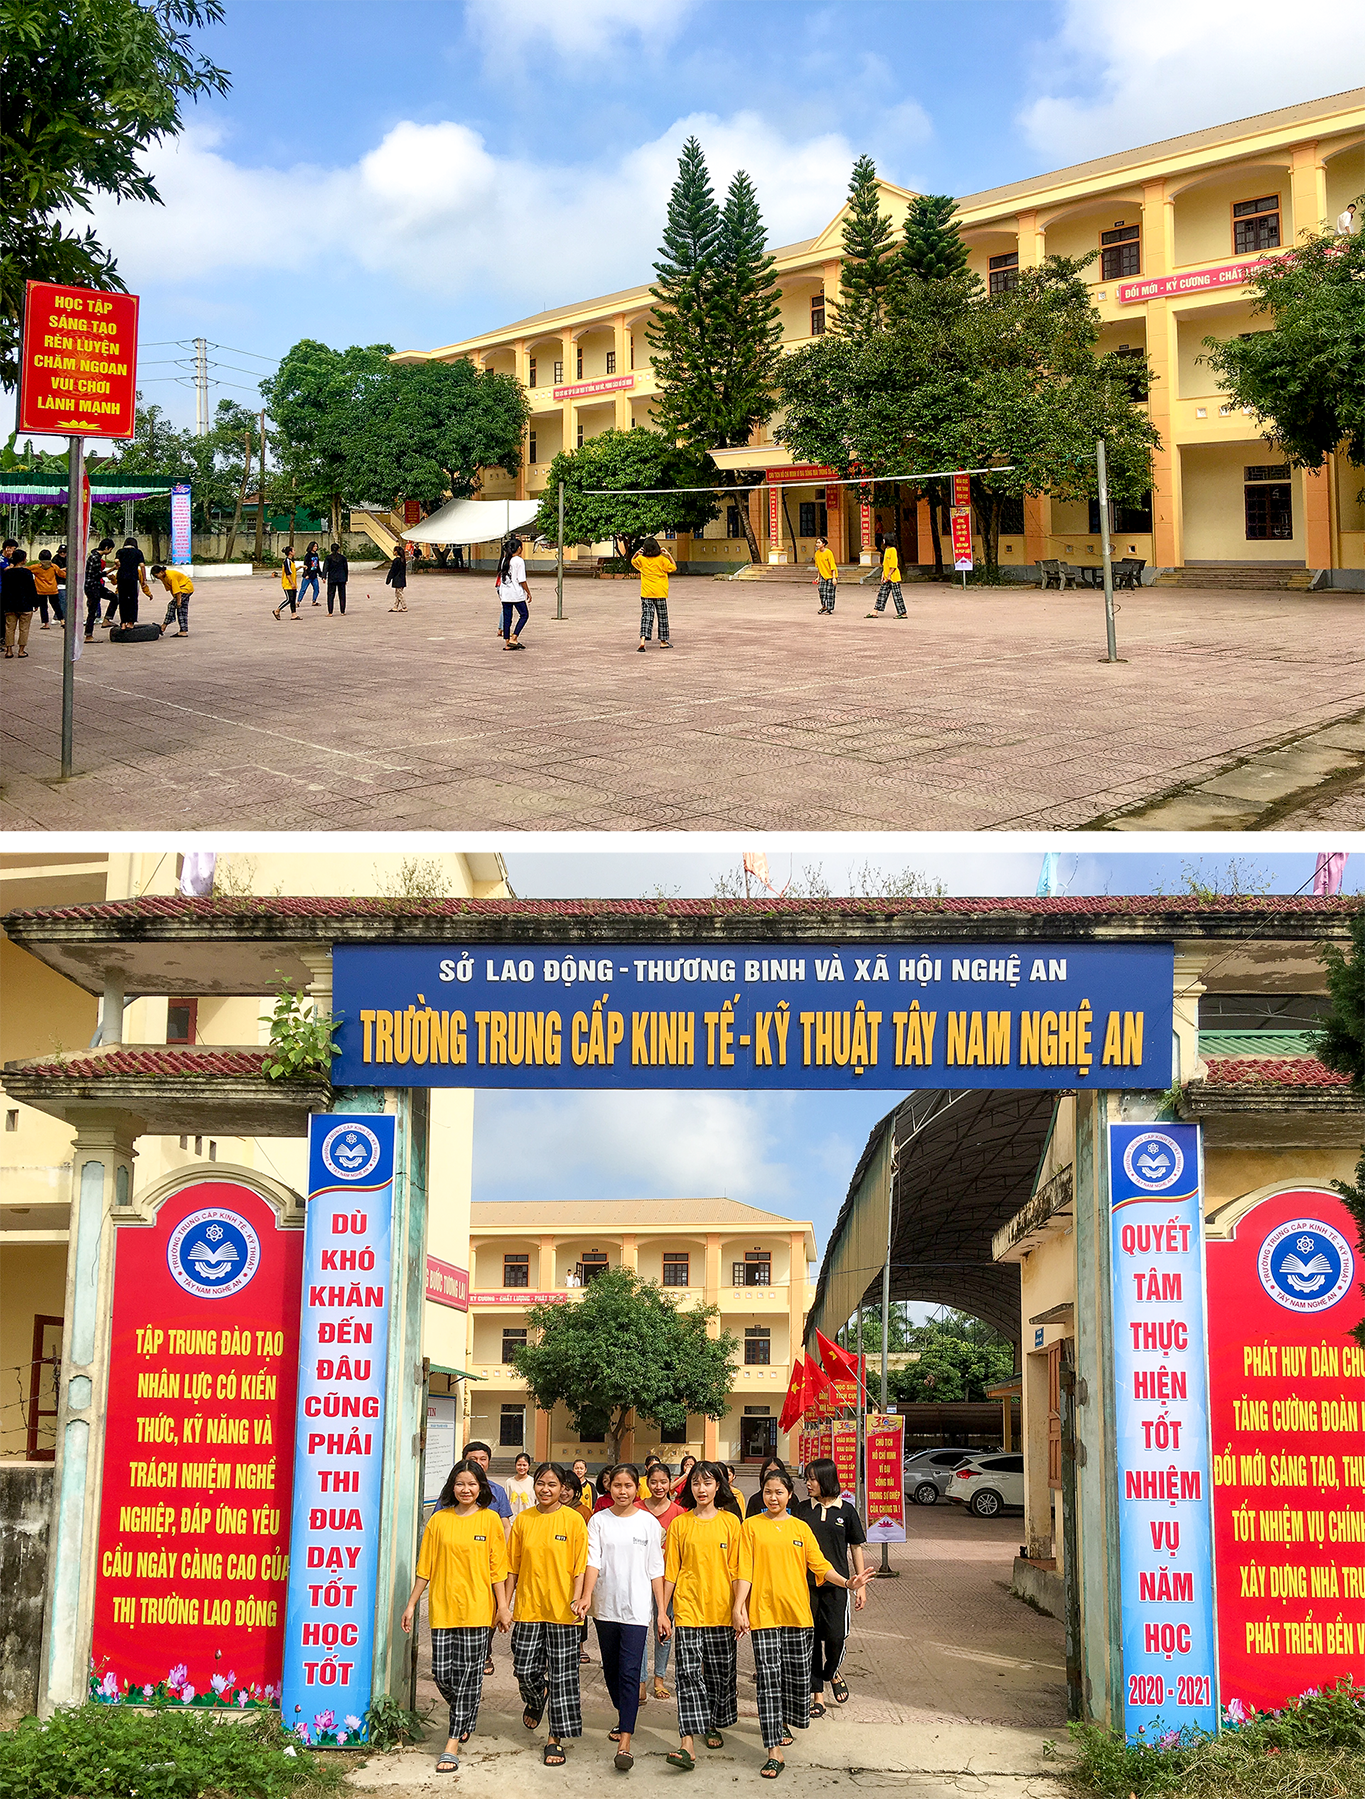 Học viên trường Trường Trung cấp kinh tế - kỹ thuật Tây Nam Nghệ An luôn phấn khởi, tự hào khi được học dưới mái trường với bề dày 35 năm đào tạo.